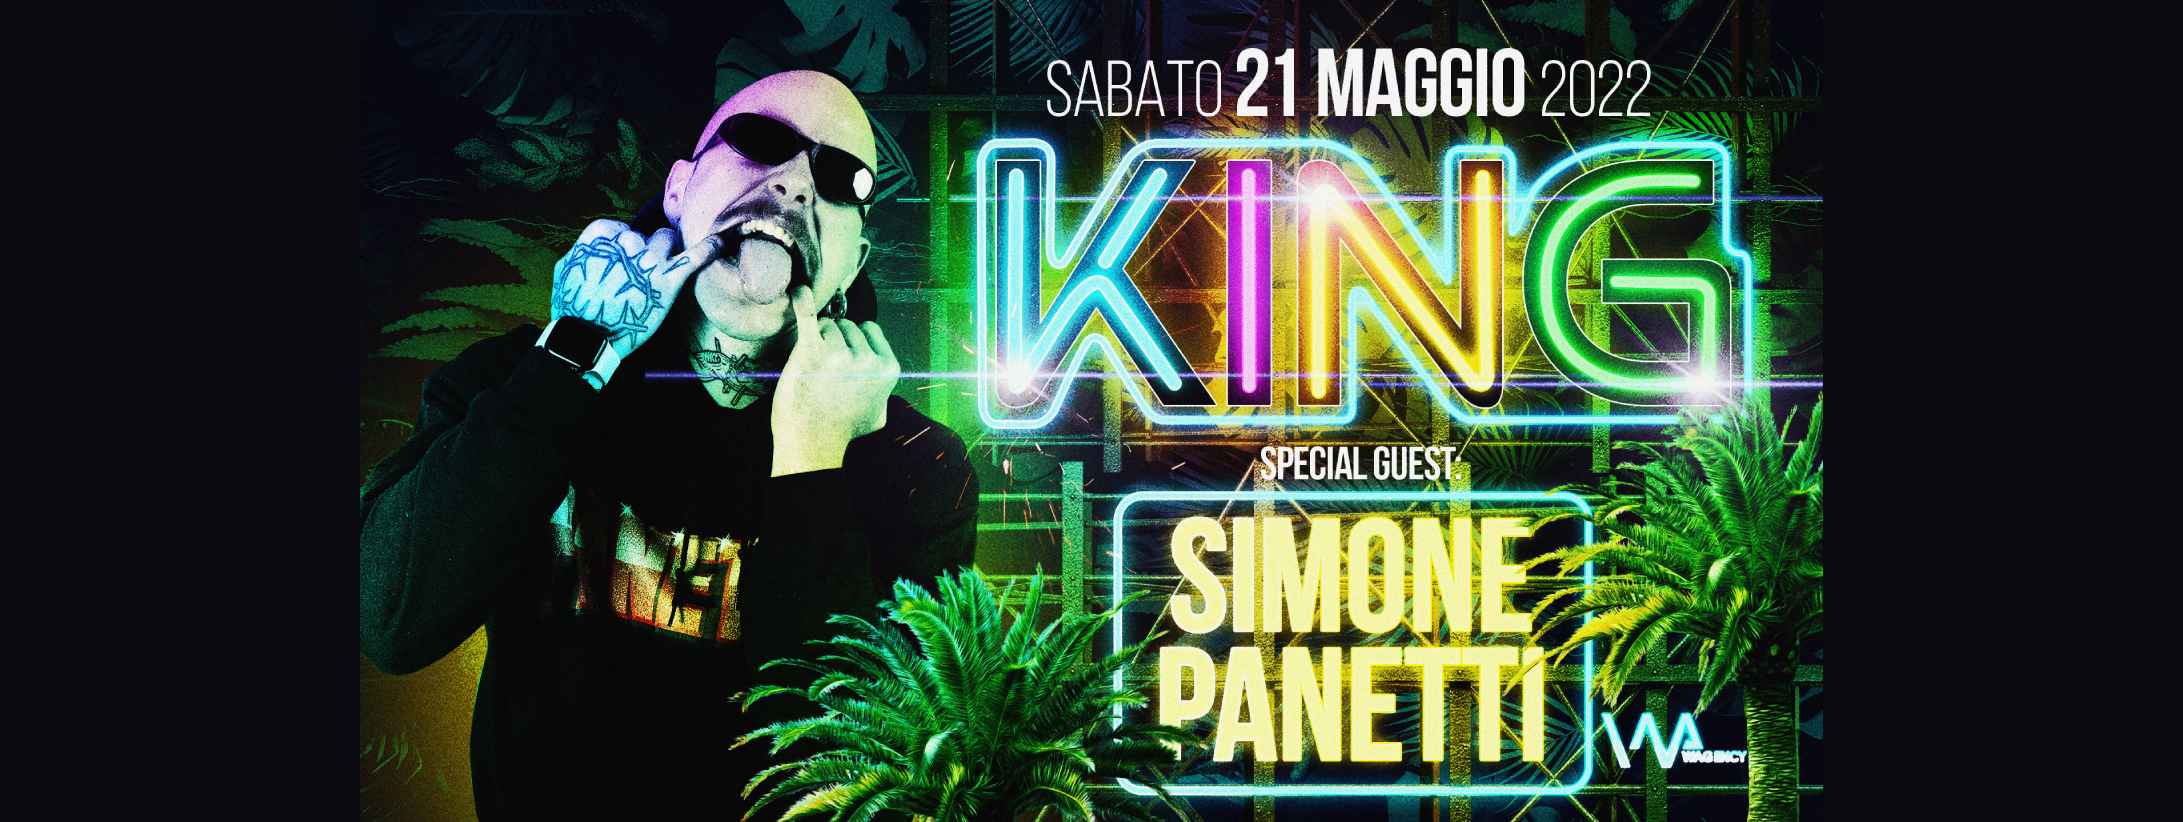 SIMONE PANETTI @ King Pinarella di Cervia Sabato 21 Maggio 2022 - Tickets